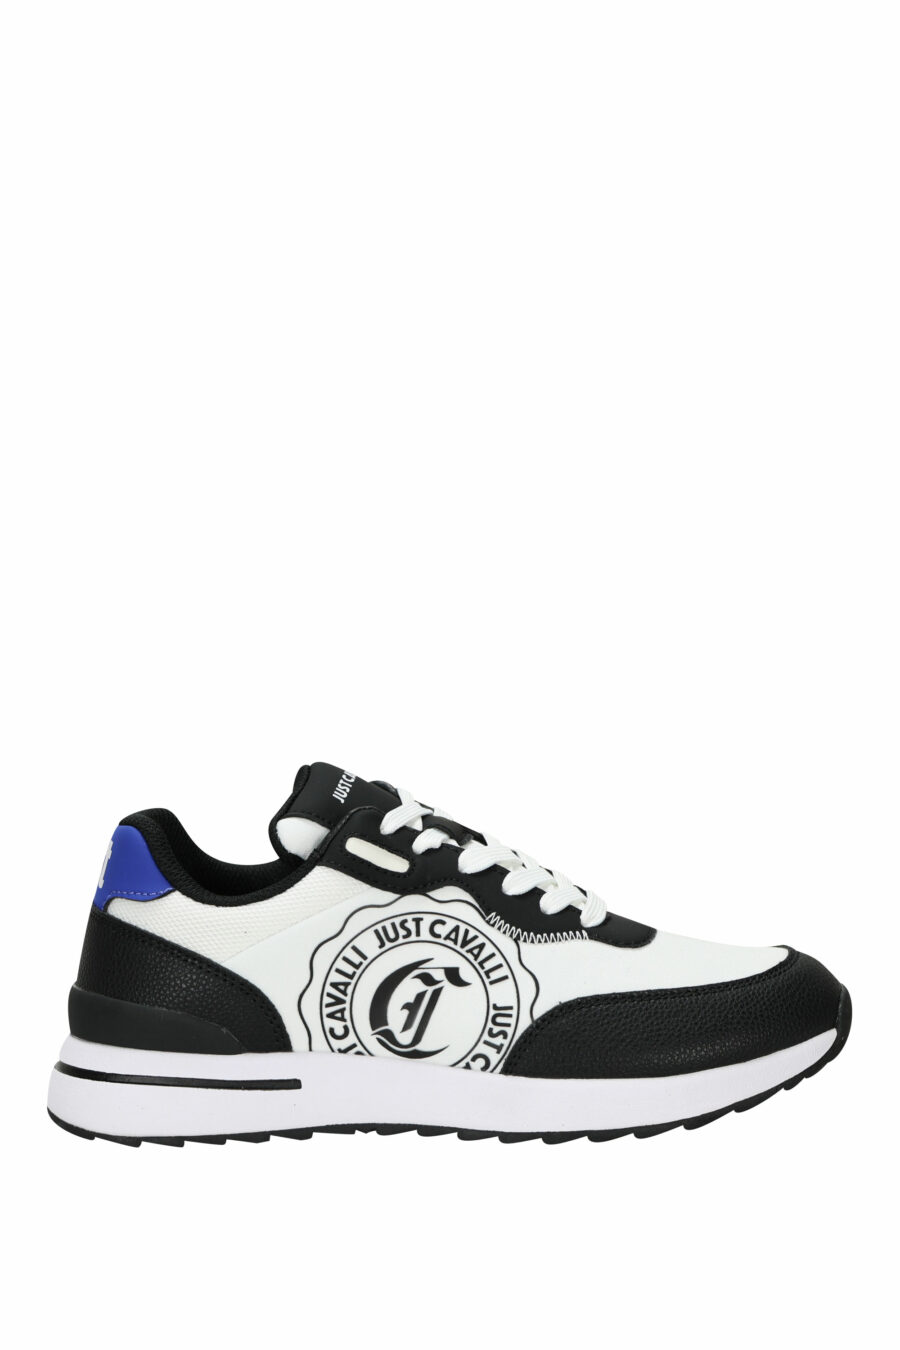 Zapatillas negras con logo circular "c" blanco y suela blanca - 8052672738400